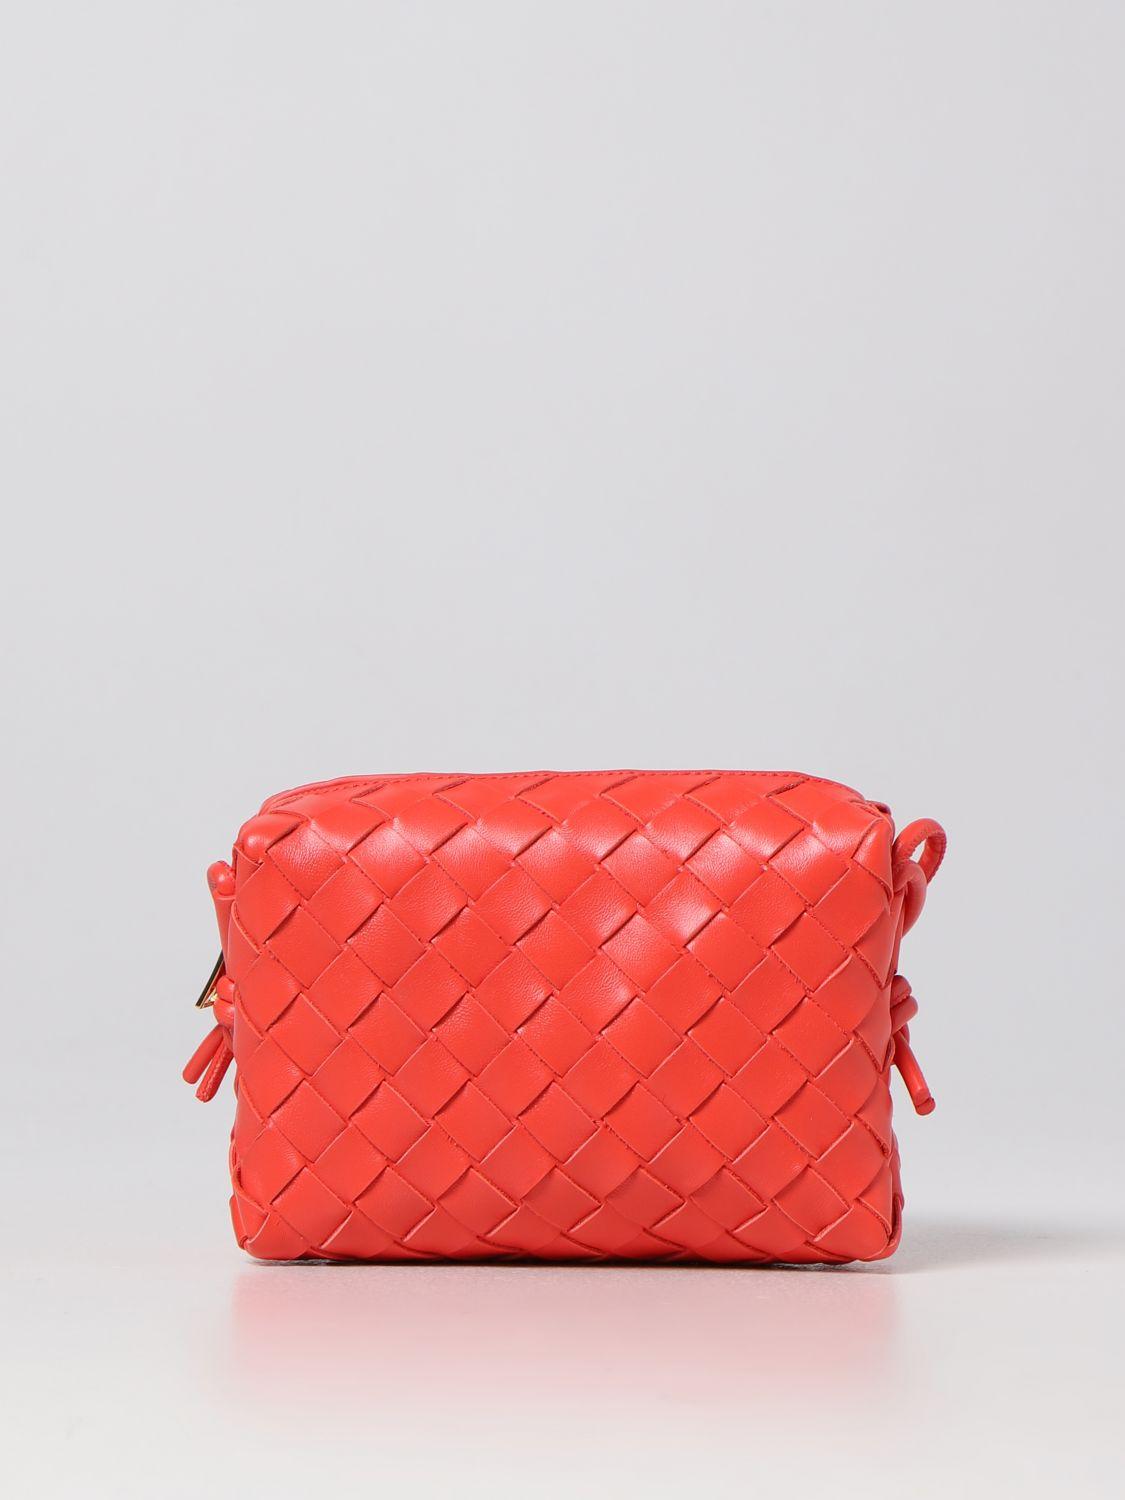 Bottega Veneta Loop Woven Leather Bag in Red | Lyst